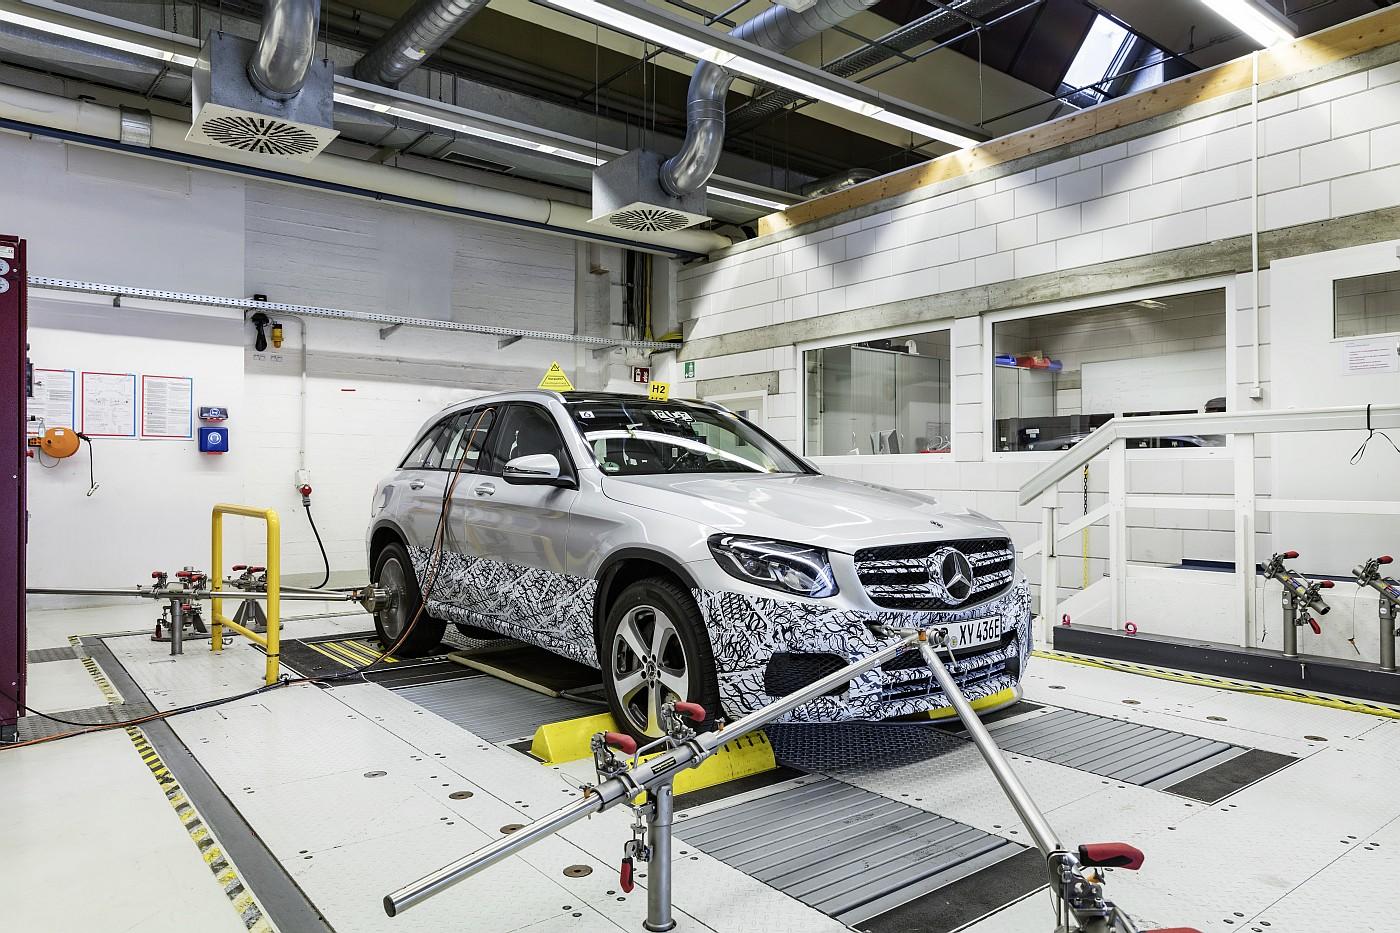 Exklusive Einblicke in die Entwicklung und Erprobung des GLC F-CELL: Die nächste Generation Brennstoffzellenfahrzeuge von Mercedes-Benz auf dem Weg zur Serienreife

Exclusive insights into the development and testing of the GLC F-CELL: The next generation